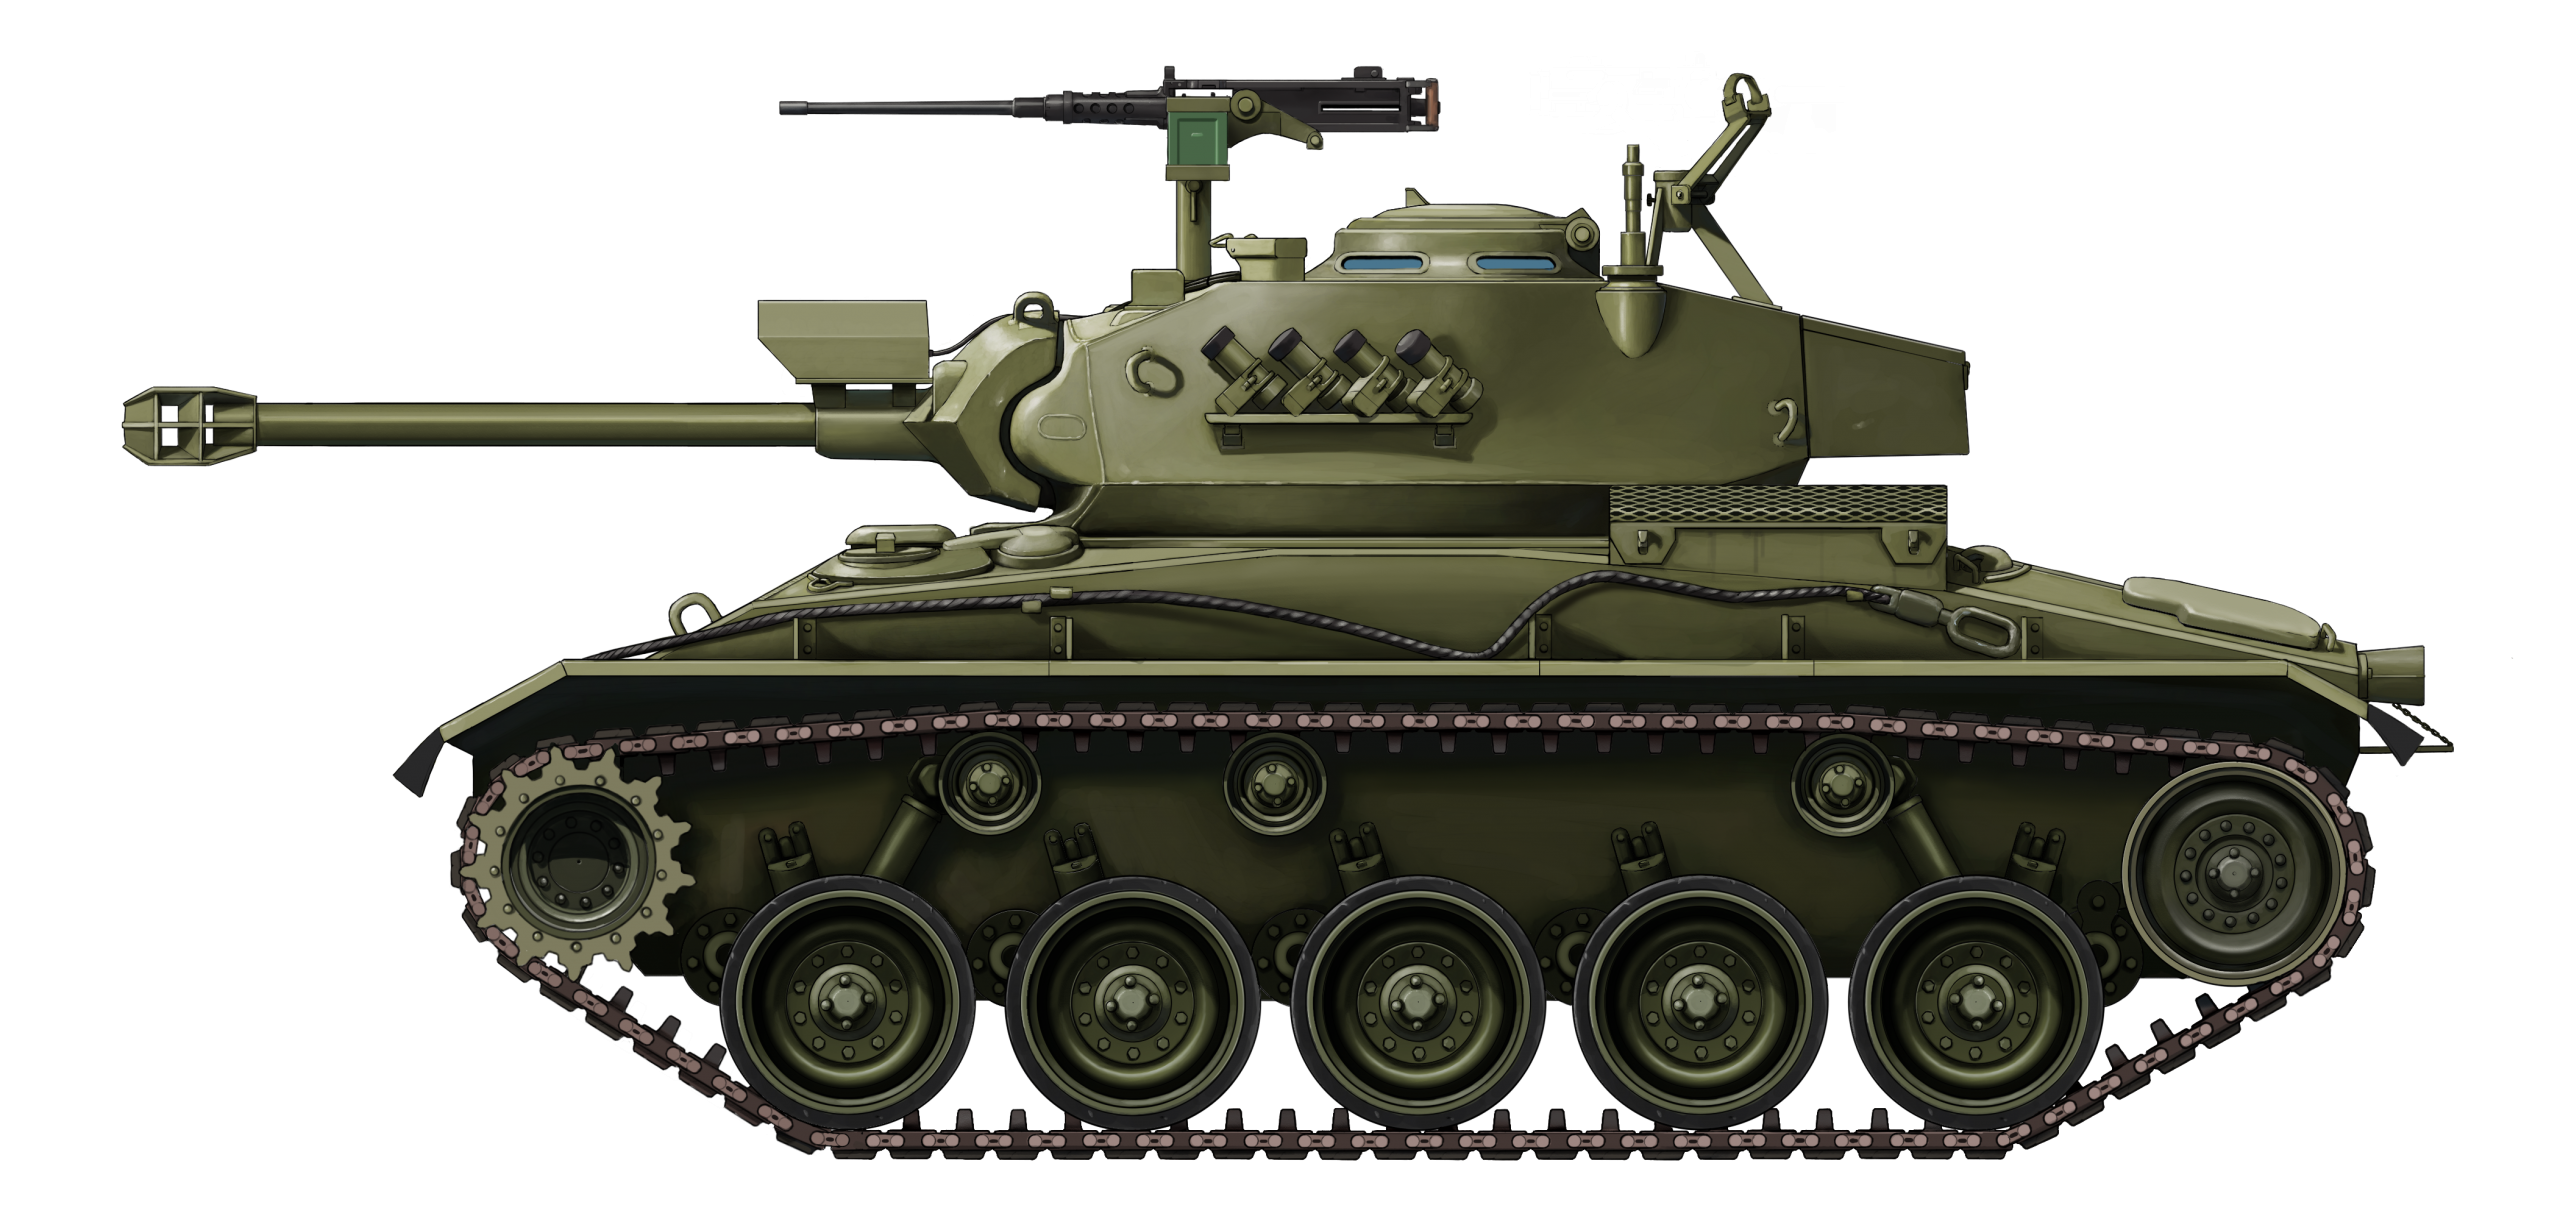 NM-116 Panserjager - Tanks Encyclopedia
